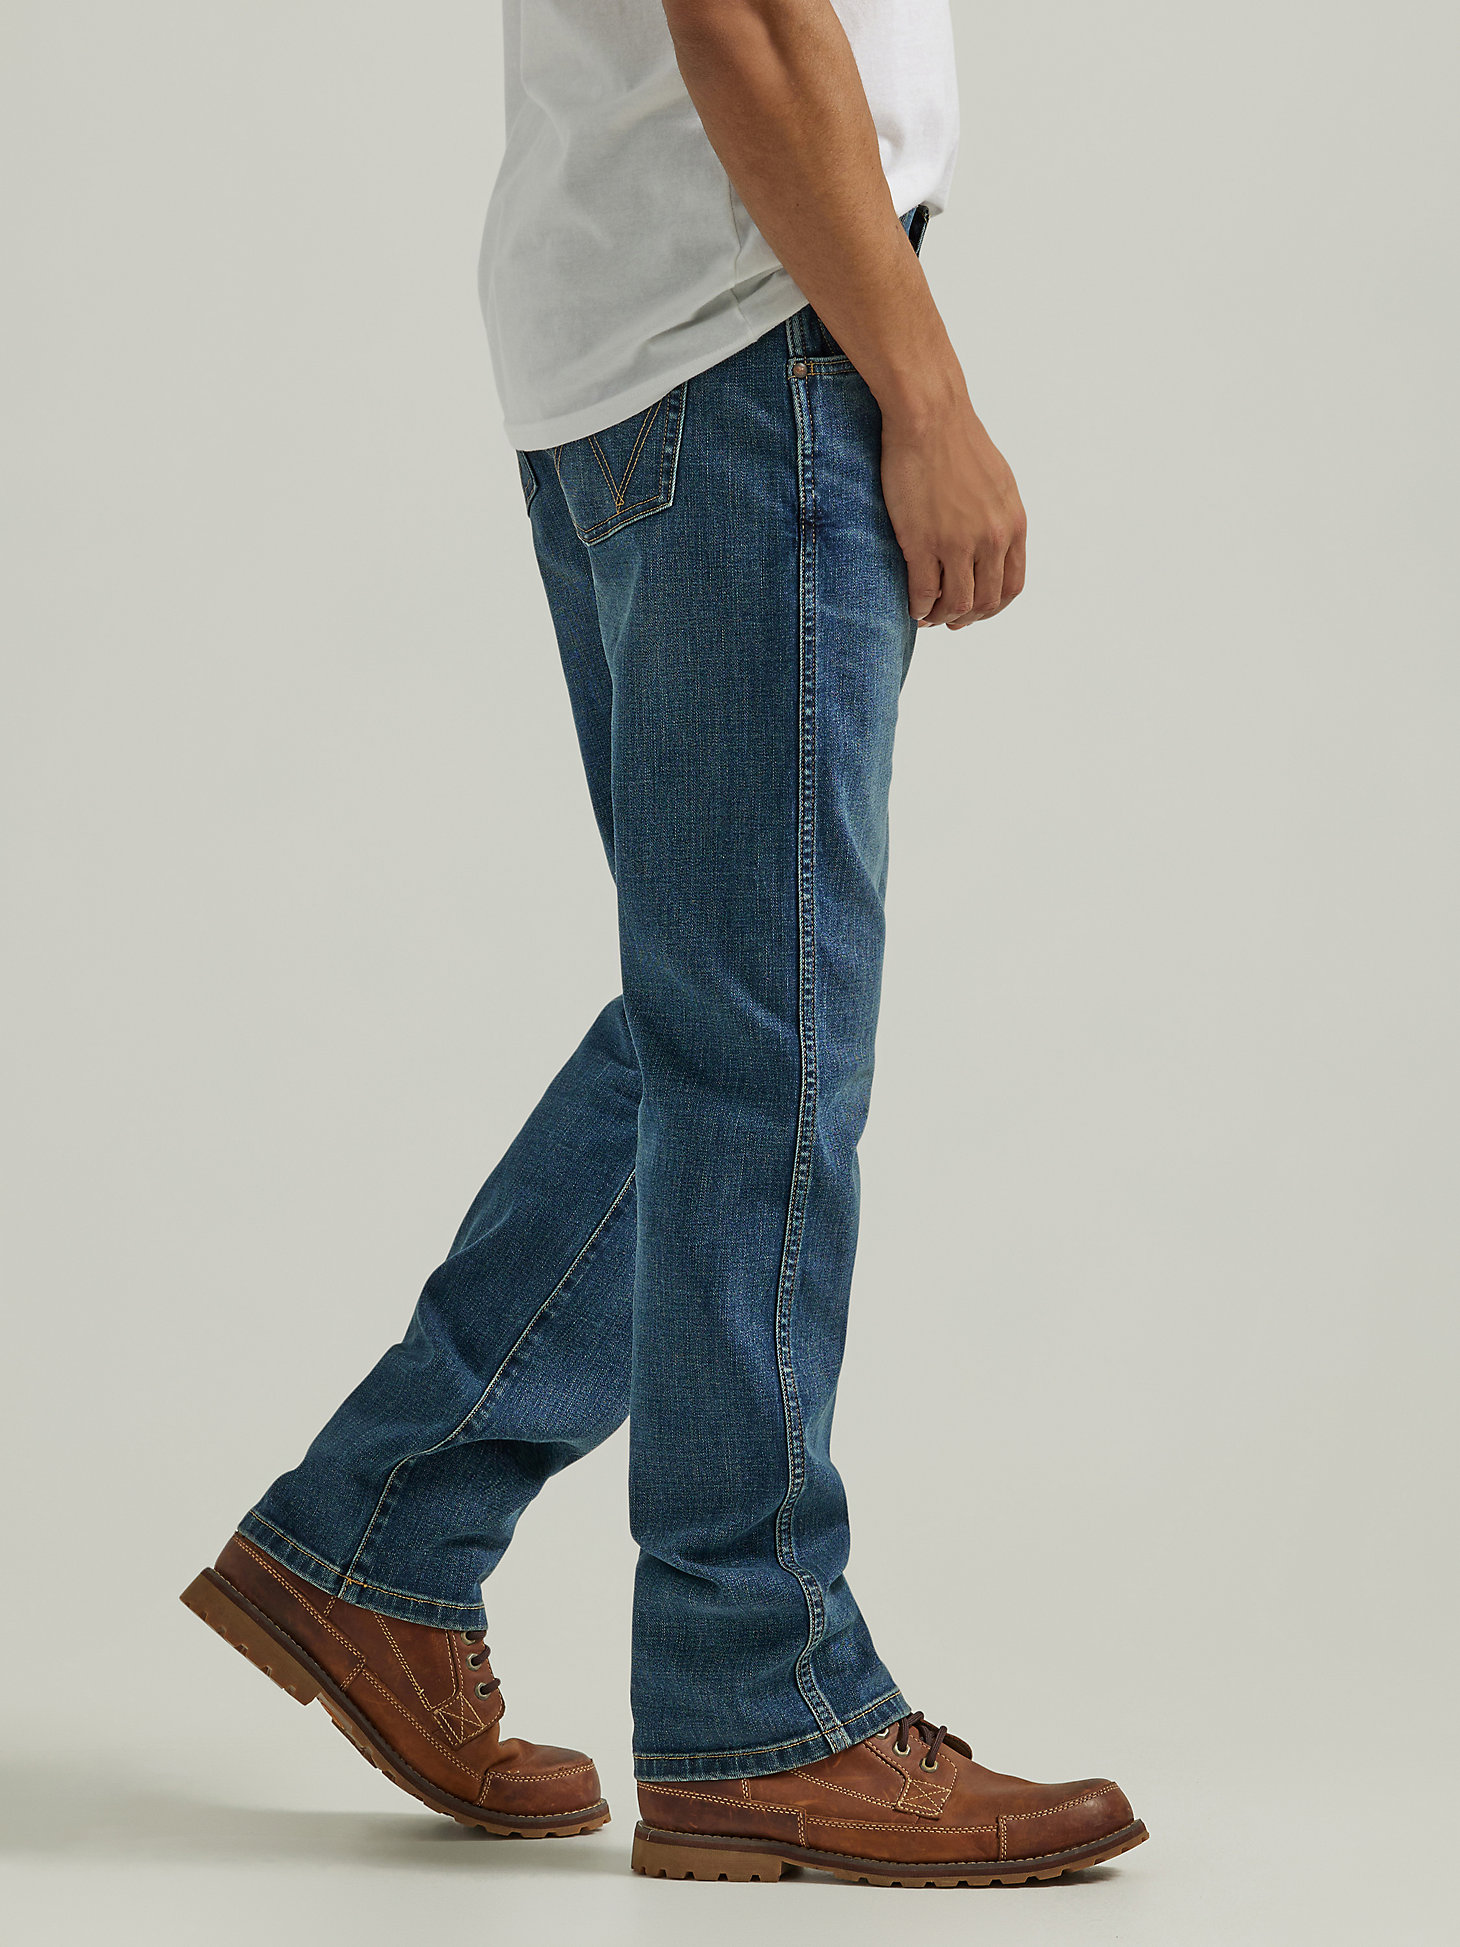 Men's Wrangler® Slim Straight Jean in Mid Wash alternative view 2